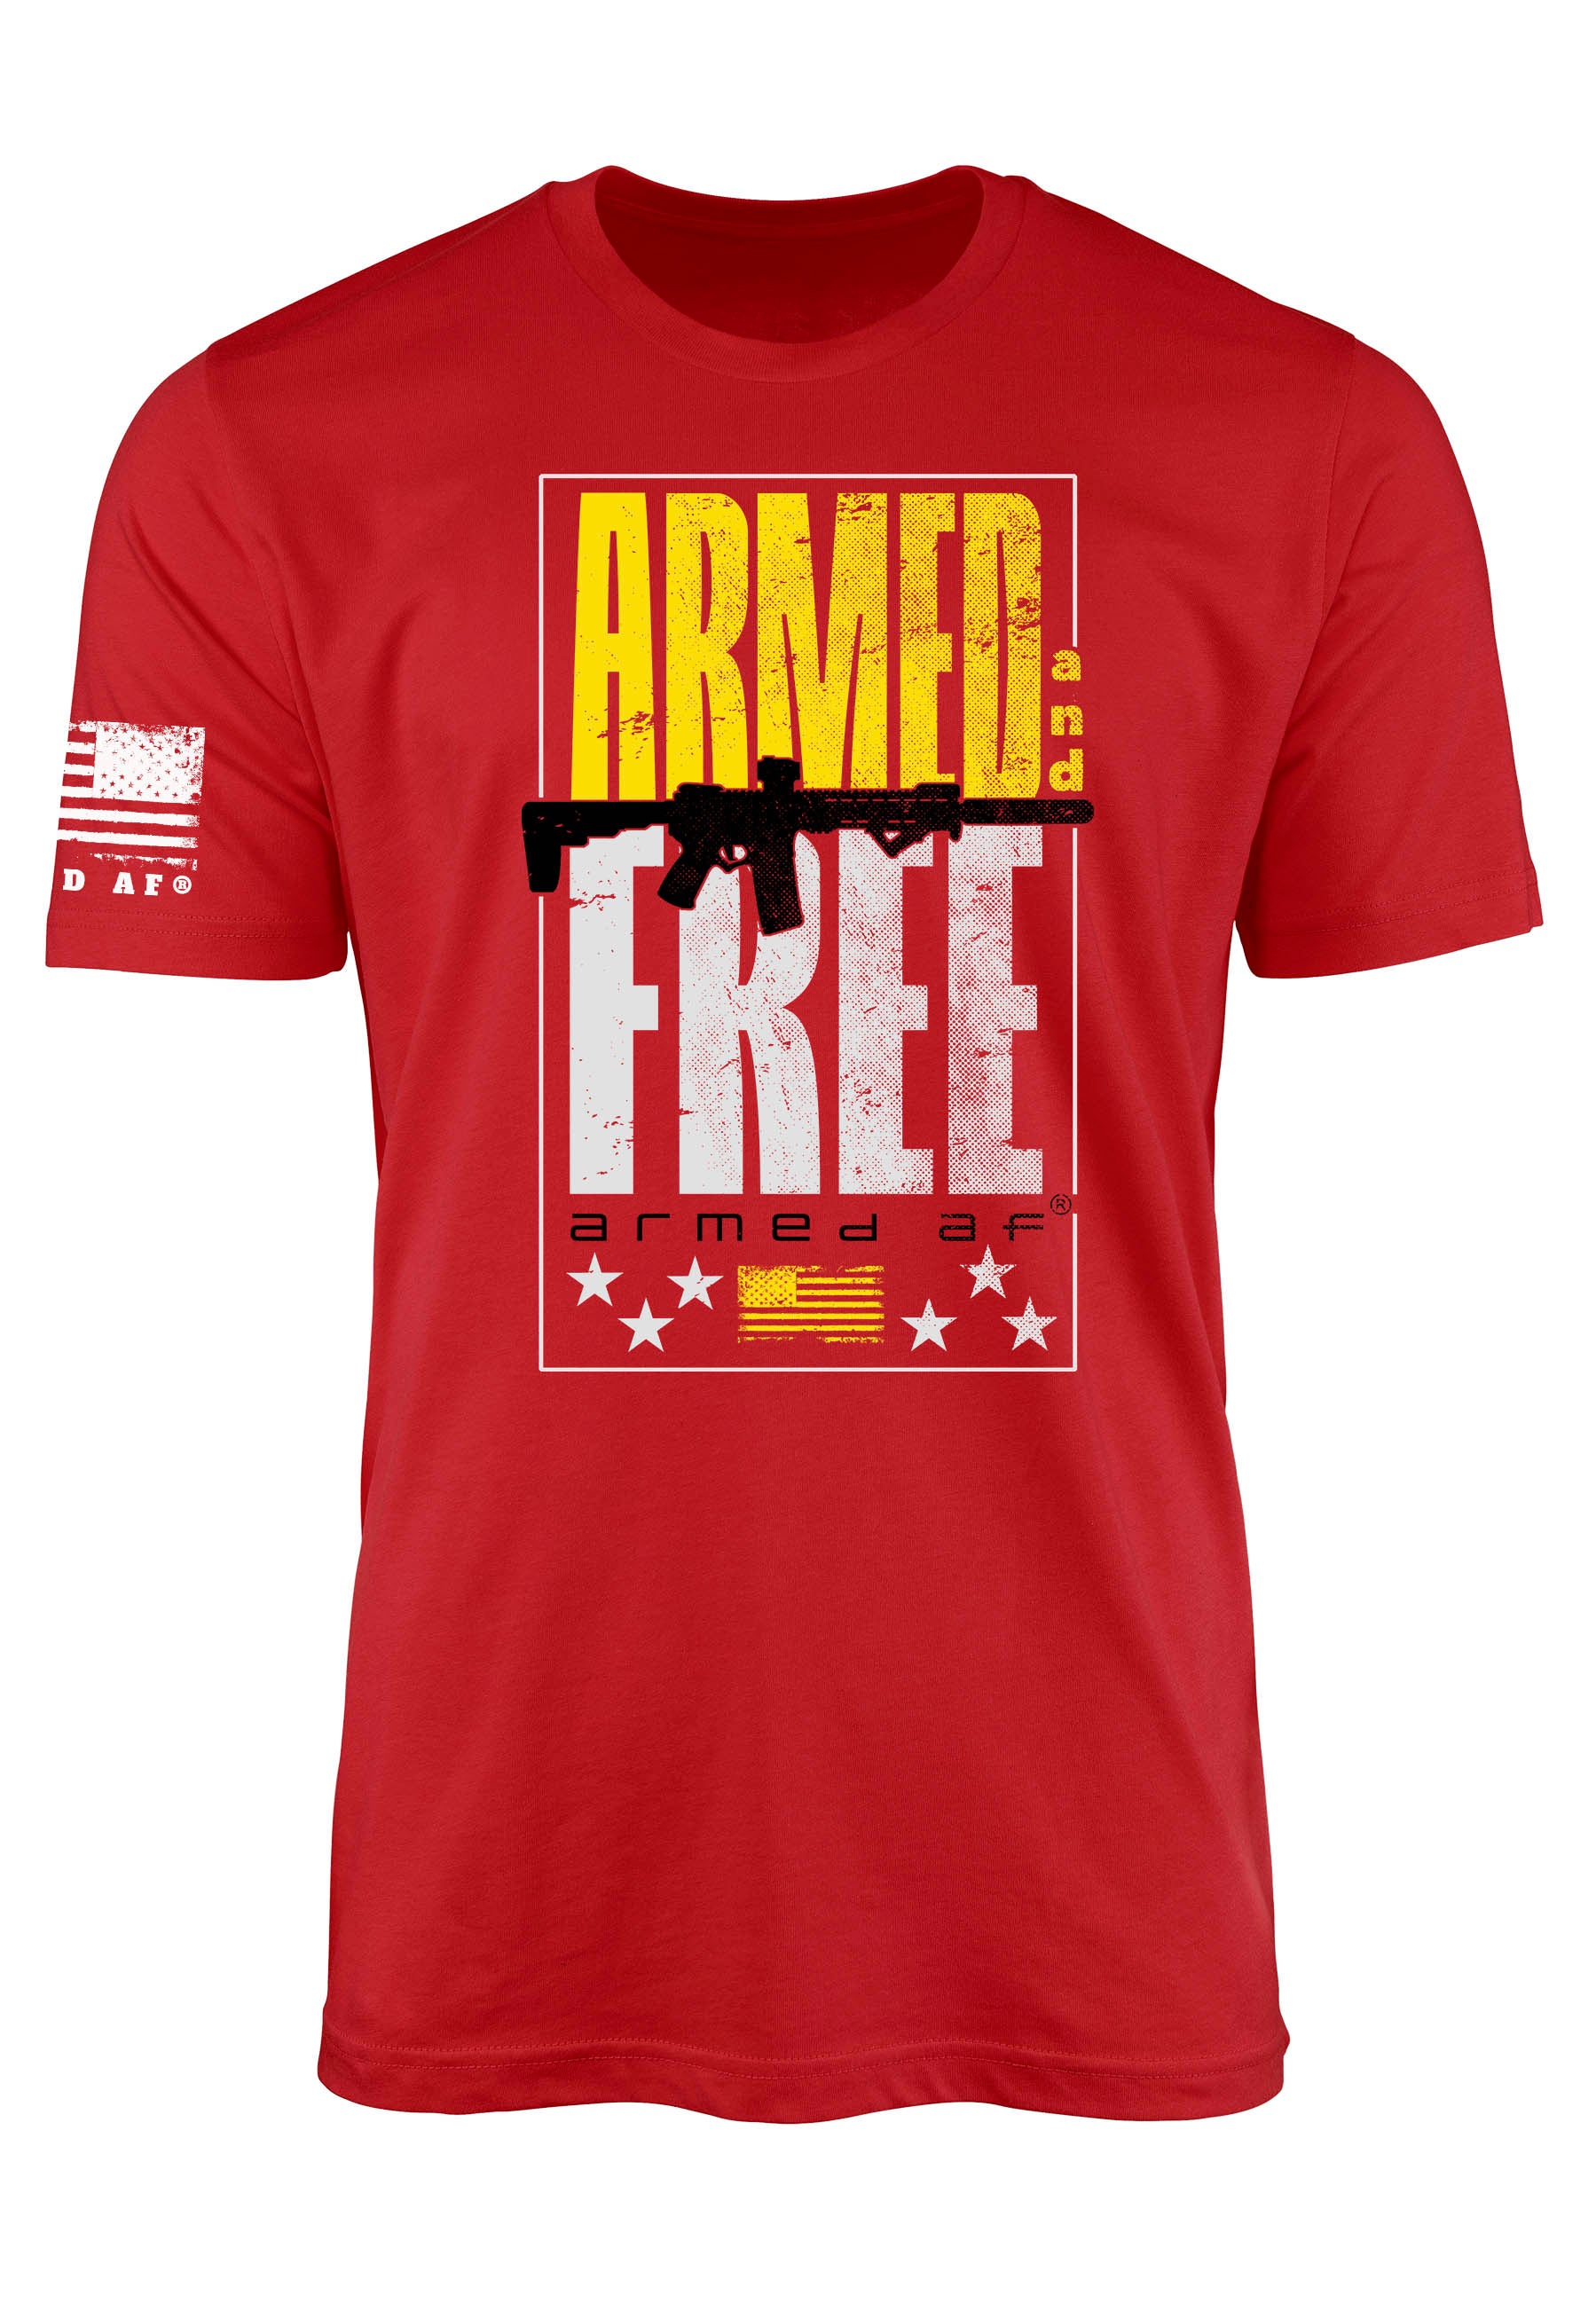 Armed AF second amendment t-shirt